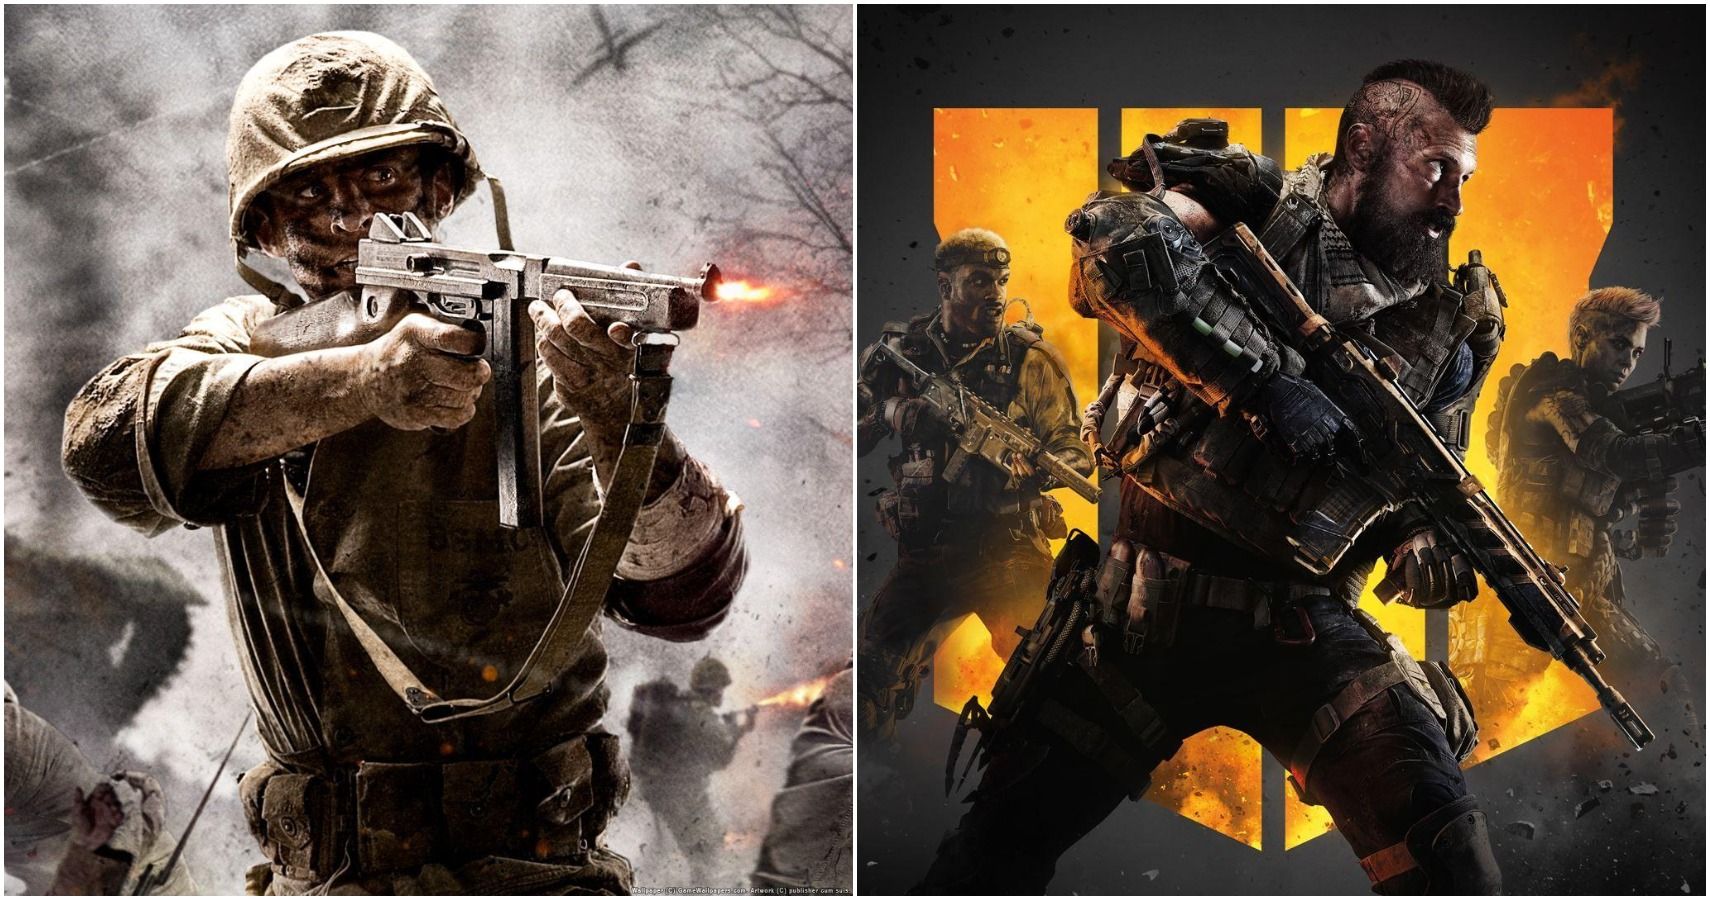 Call of Duty: Black Ops II - Metacritic